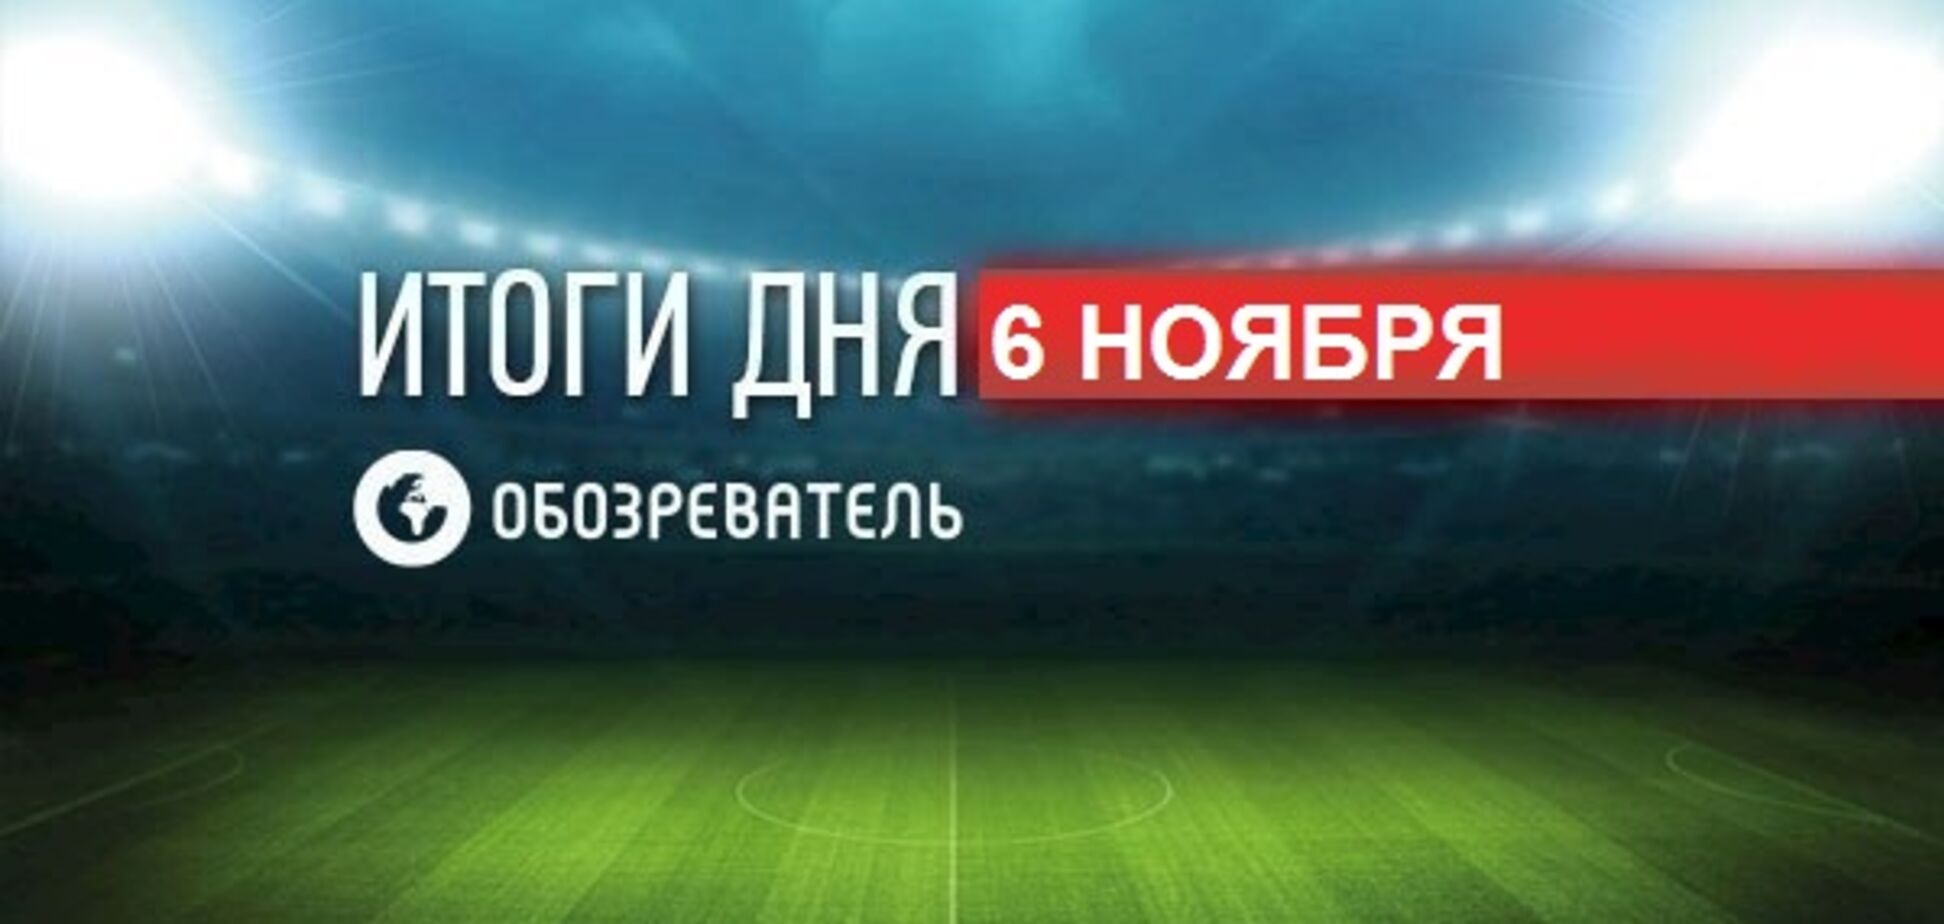 Матч чемпионата России по футболу завершился конфузом: спортивные итоги 6 ноября